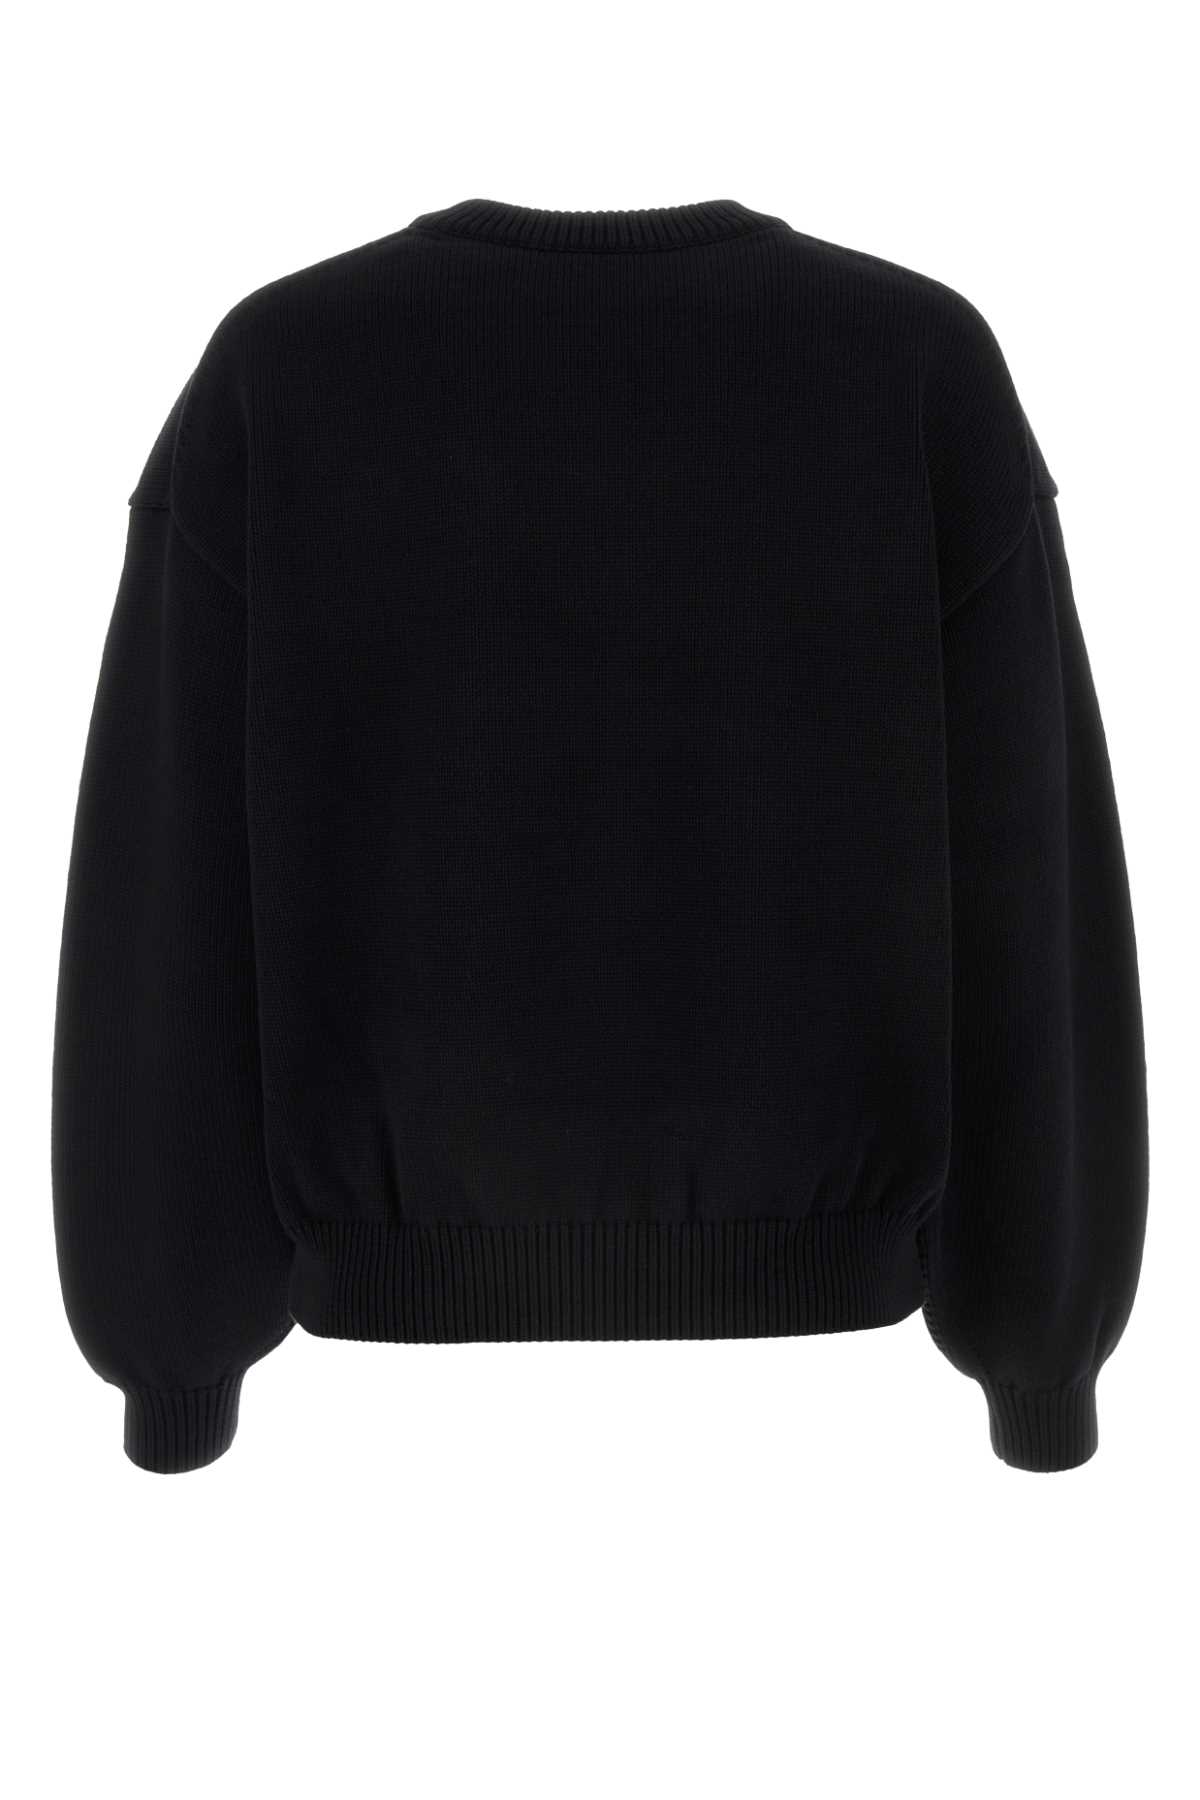 Shop Alexander Wang Black Stretch Cotton Blend Sweater